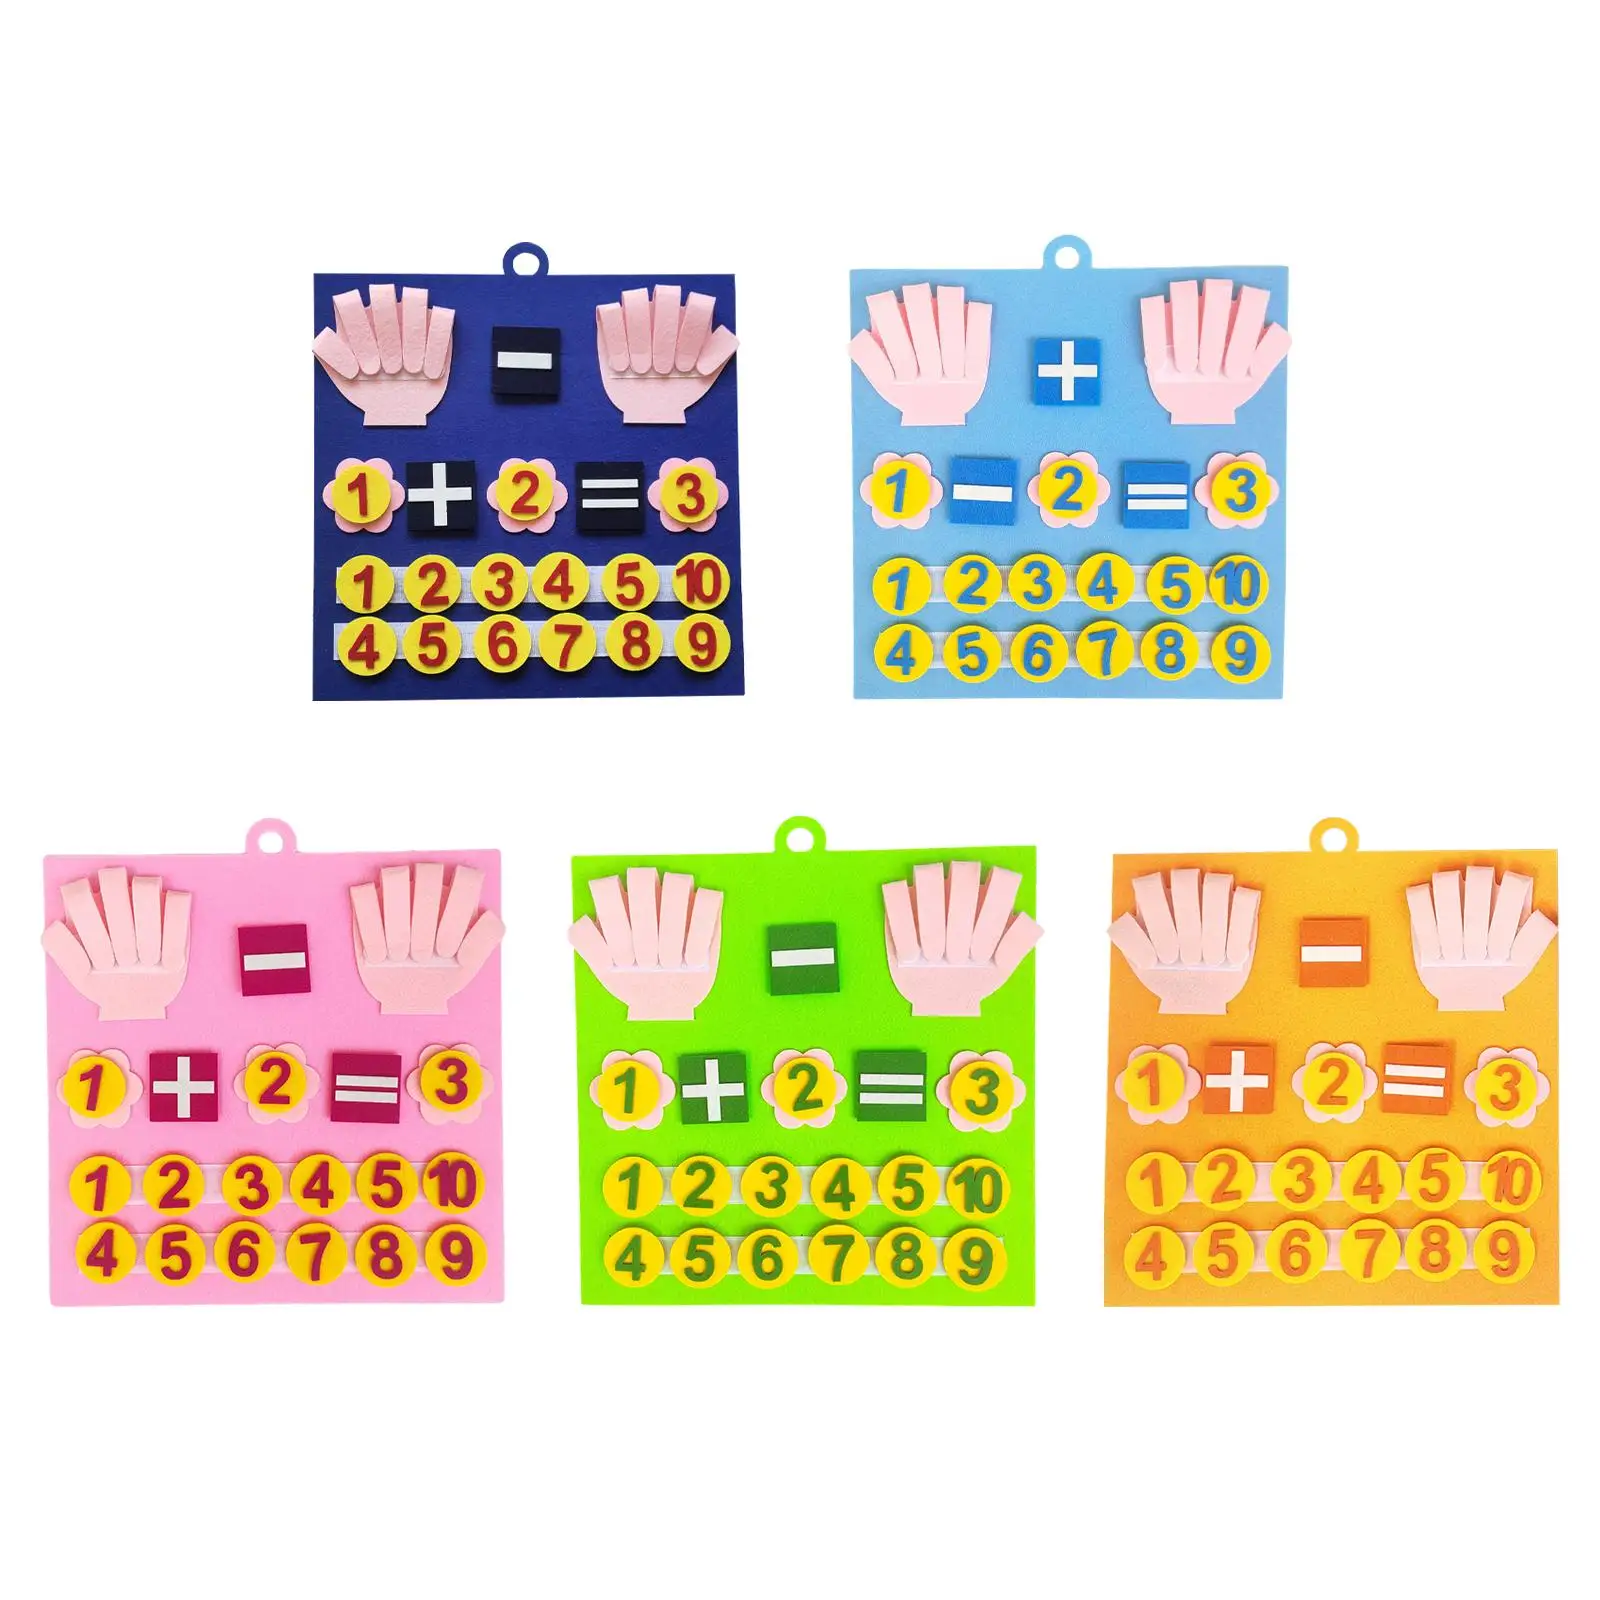 

Войлочная доска с числами для пальцев, Обучающие вспомогательные материалы для раннего развития, игрушки для малышей 3 + лет, подарки для детей на день рождения